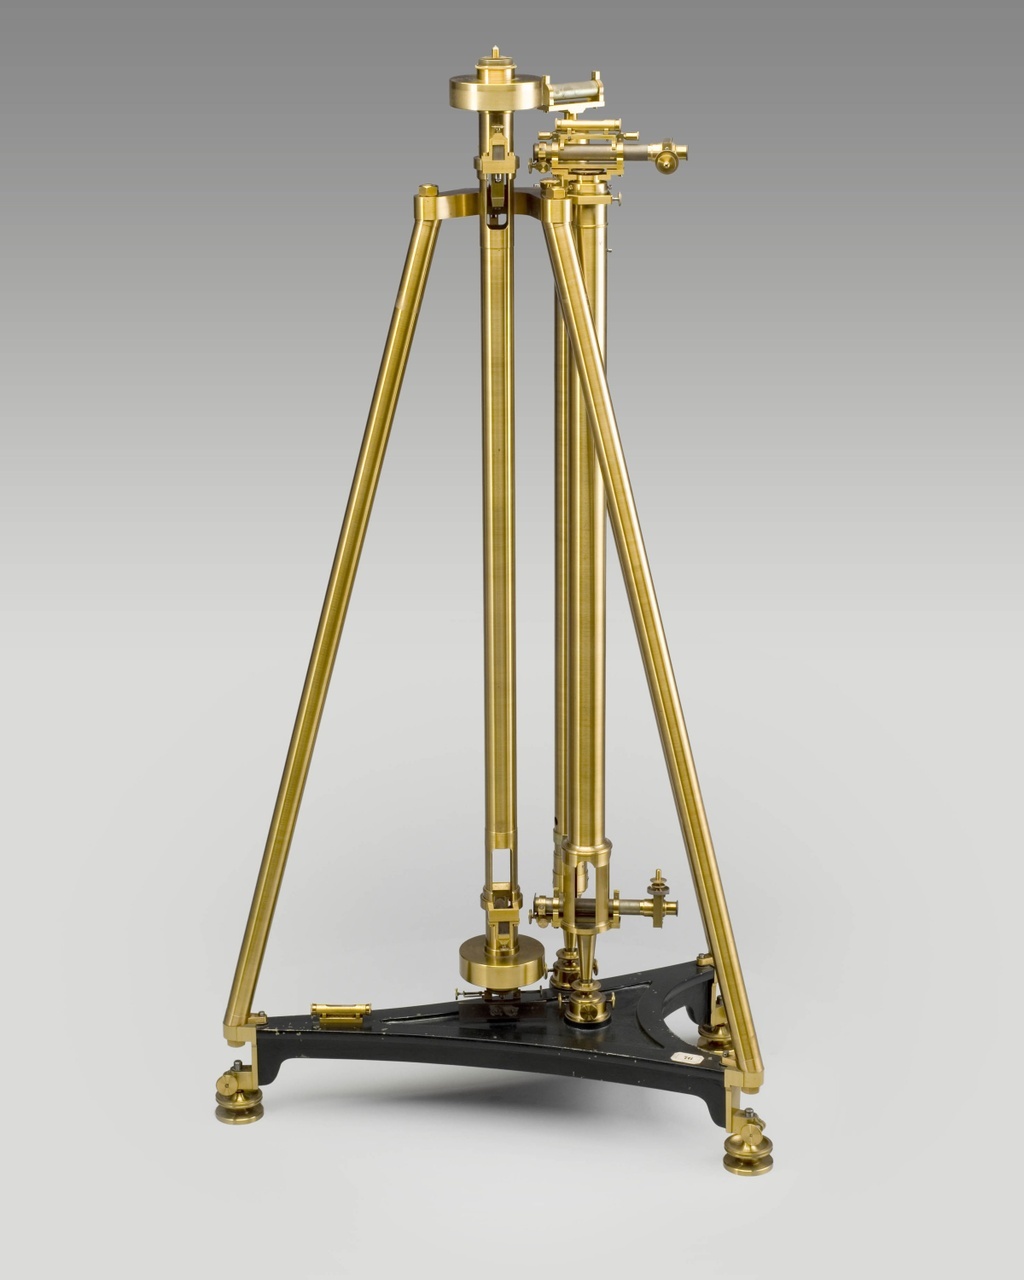 Маятниковый гравиметр (маятник Катера),  конструкция начала XIX века. Потомок маятниковых экспериментов Рише.